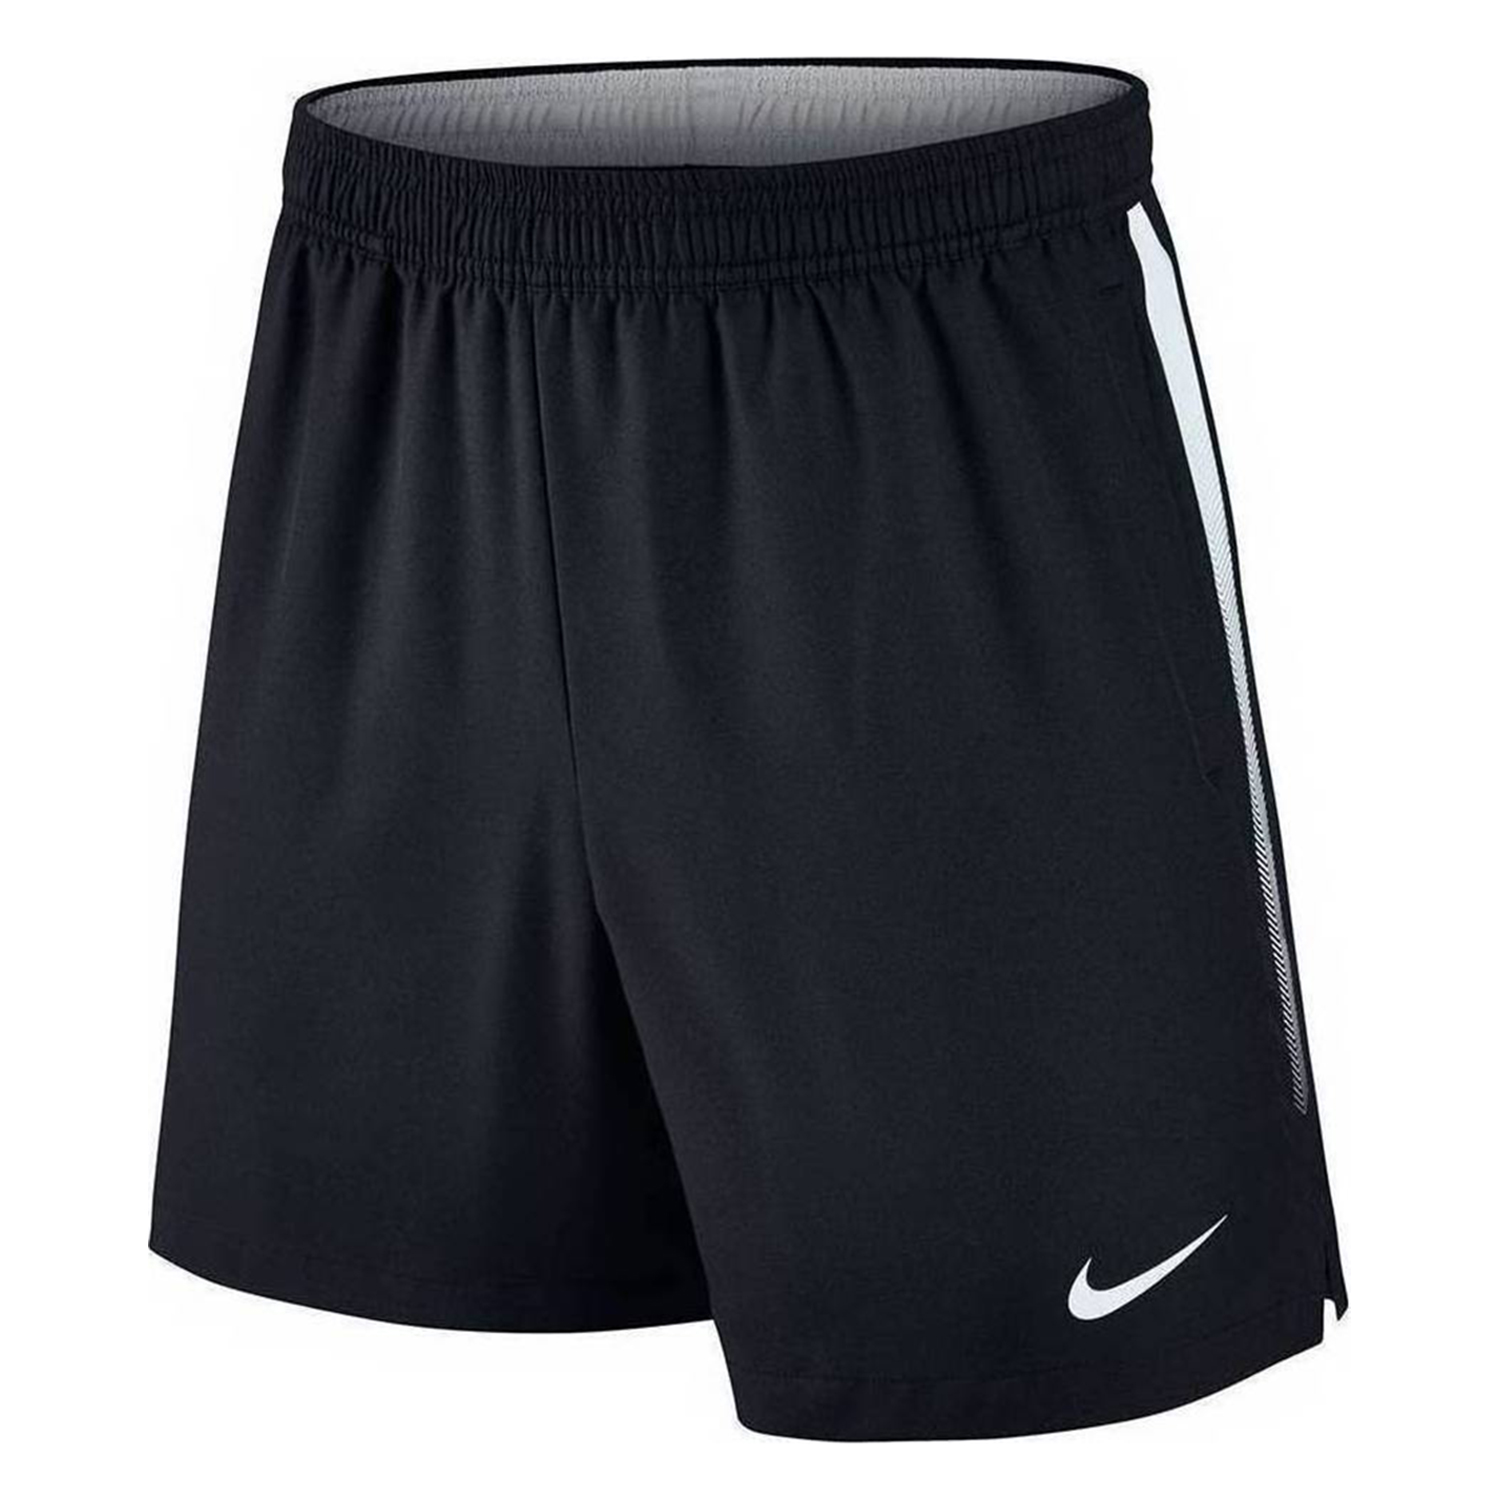 Шорты nike dri fit. 2 Inch shorts Nike Dri-Fit. Шорты Nike Herren. 2 Inch men shorts Nike Dry Fit. Шорты Nike Dri Fit мужские.